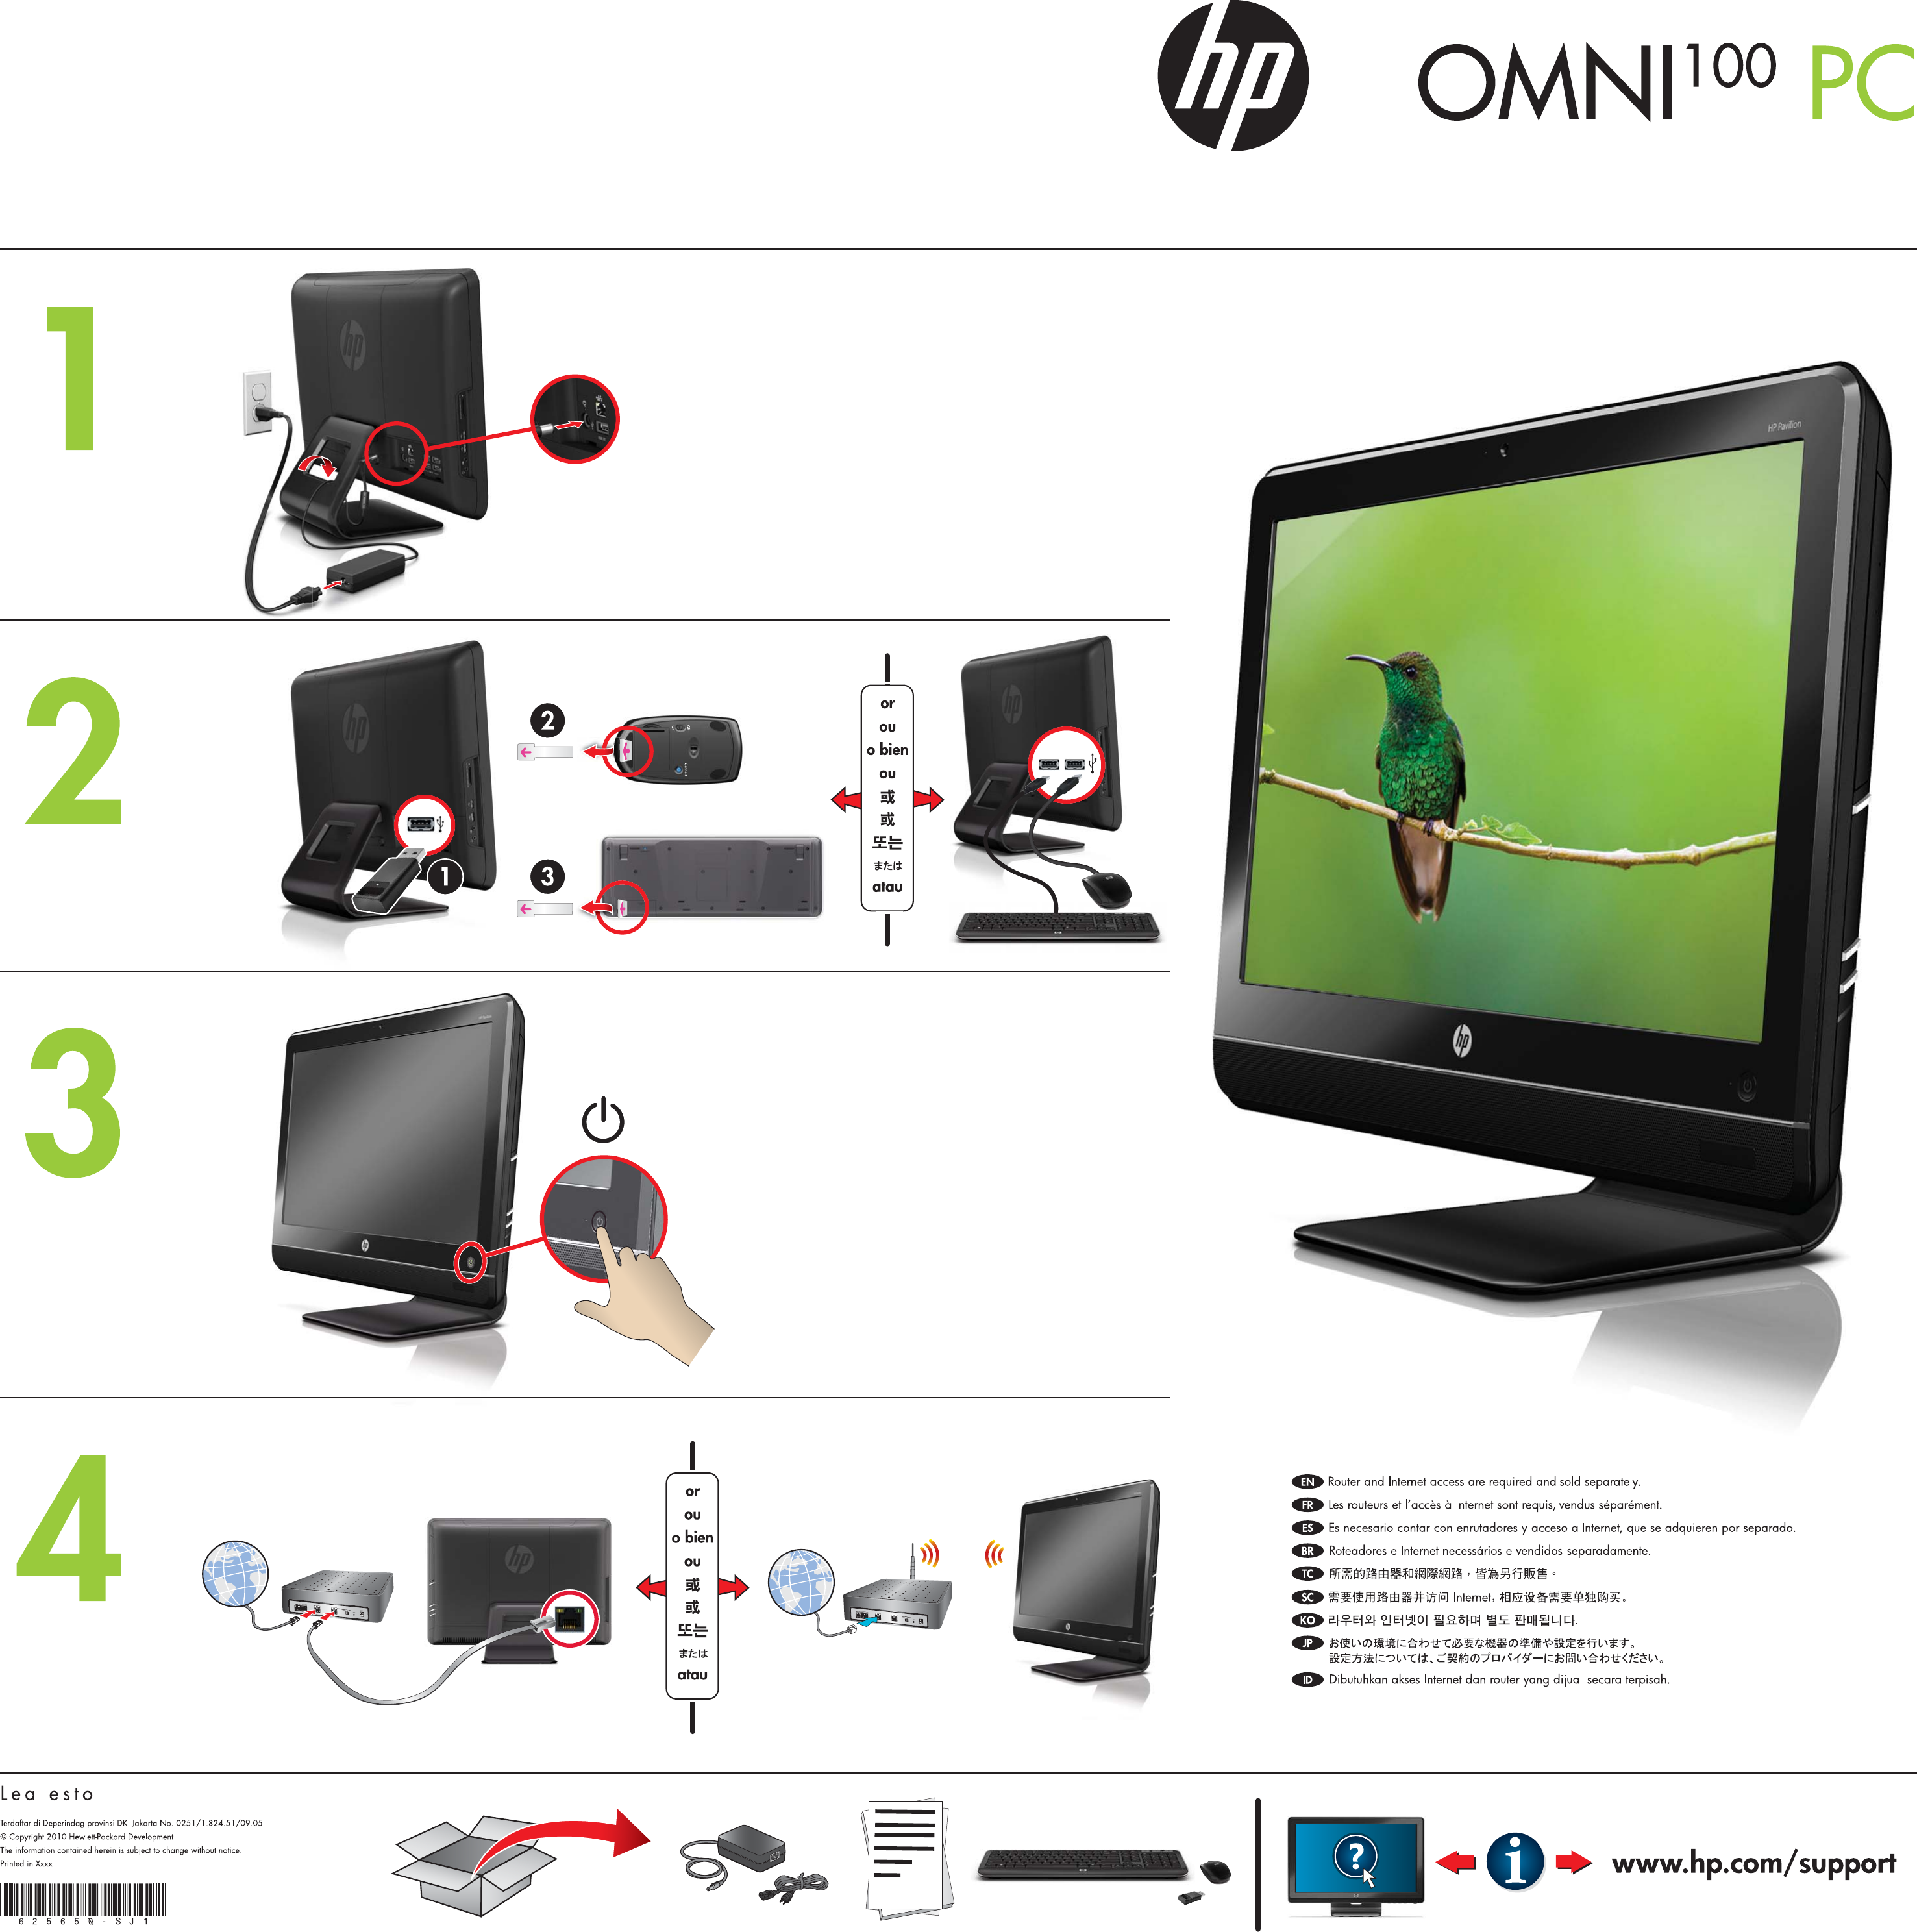 Page 1 of 1 - Hp Hp-Omni-100-5000Z-Cto-Desktop-Pc-Setup-Poster- Omni 100 PC Setup Poster  Hp-omni-100-5000z-cto-desktop-pc-setup-poster